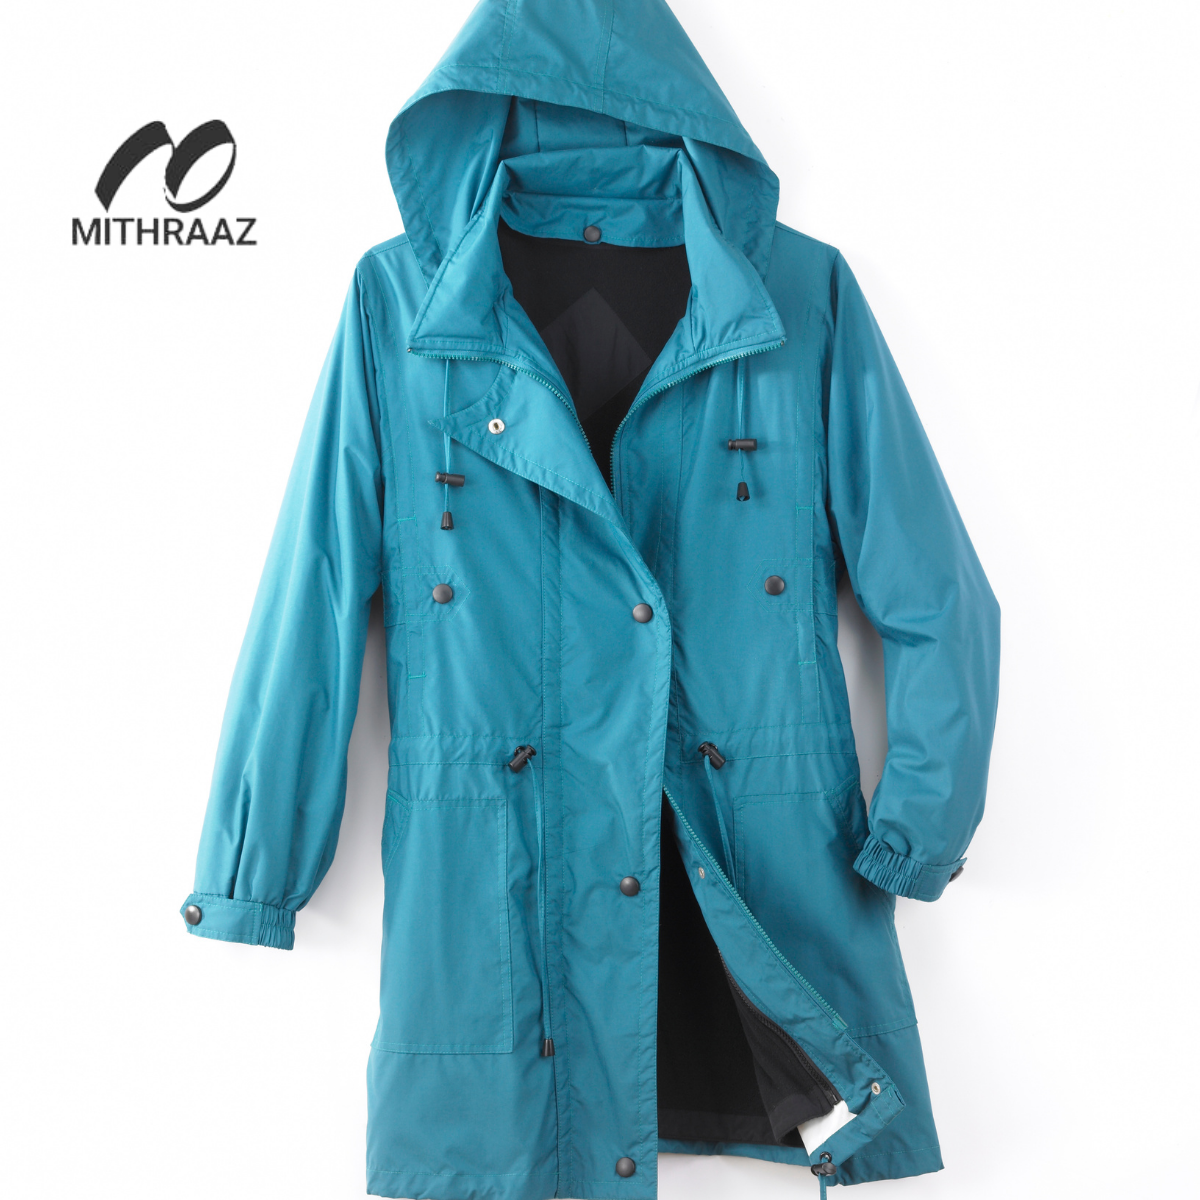 Mithraaz Rain Jackets